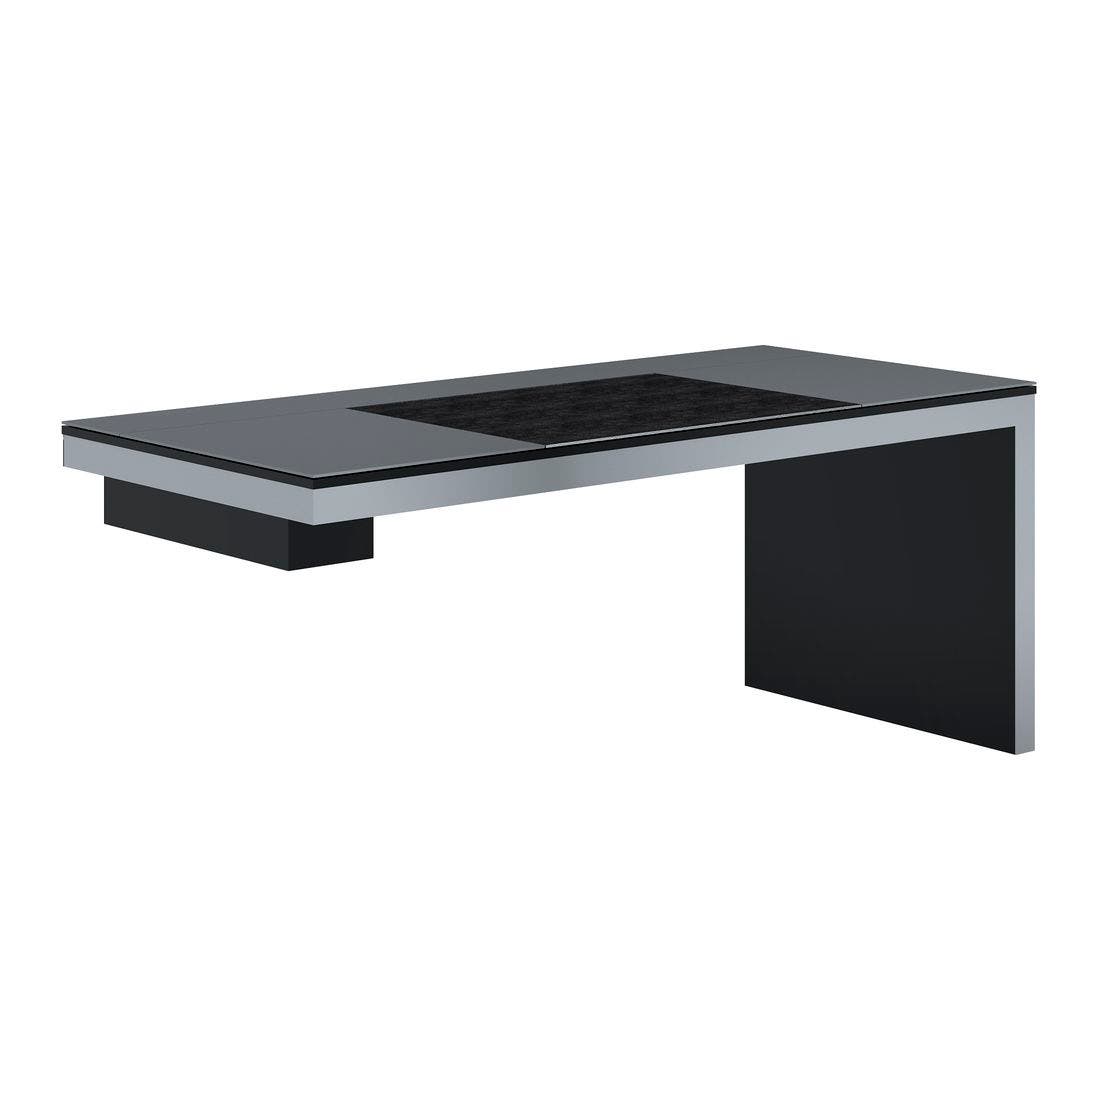 เฟอร์นิเจอร์สำนักงาน โต๊ะทำงาน รุ่น Grande สีสีดำ-SB Design Square